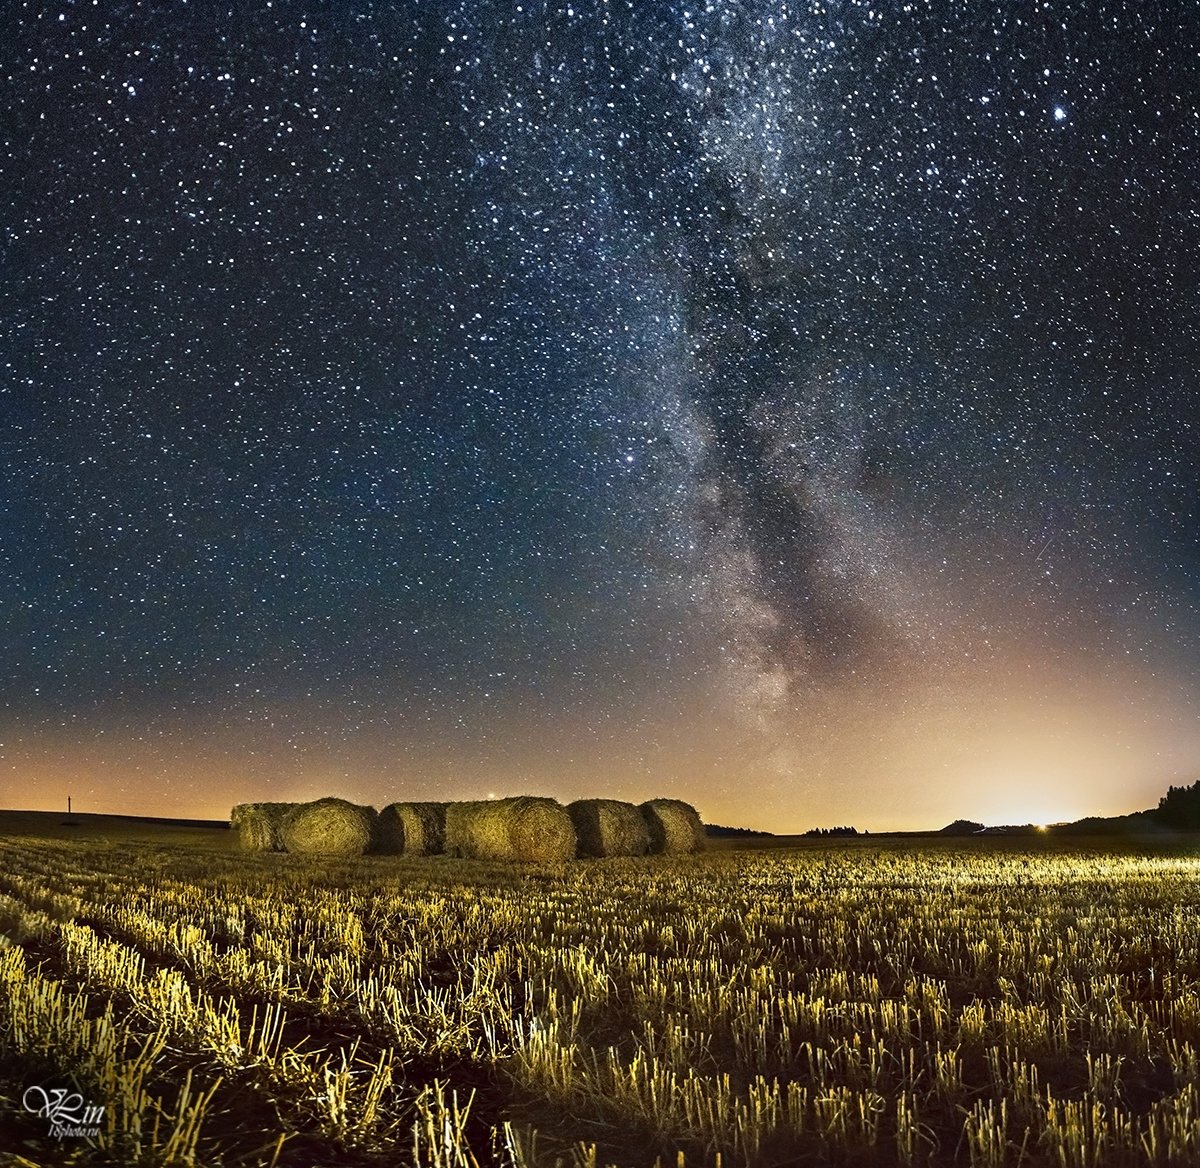 Над полем ночь Млечный путь Болгуры пейзаж ночной поле сено ночь звезды галактика